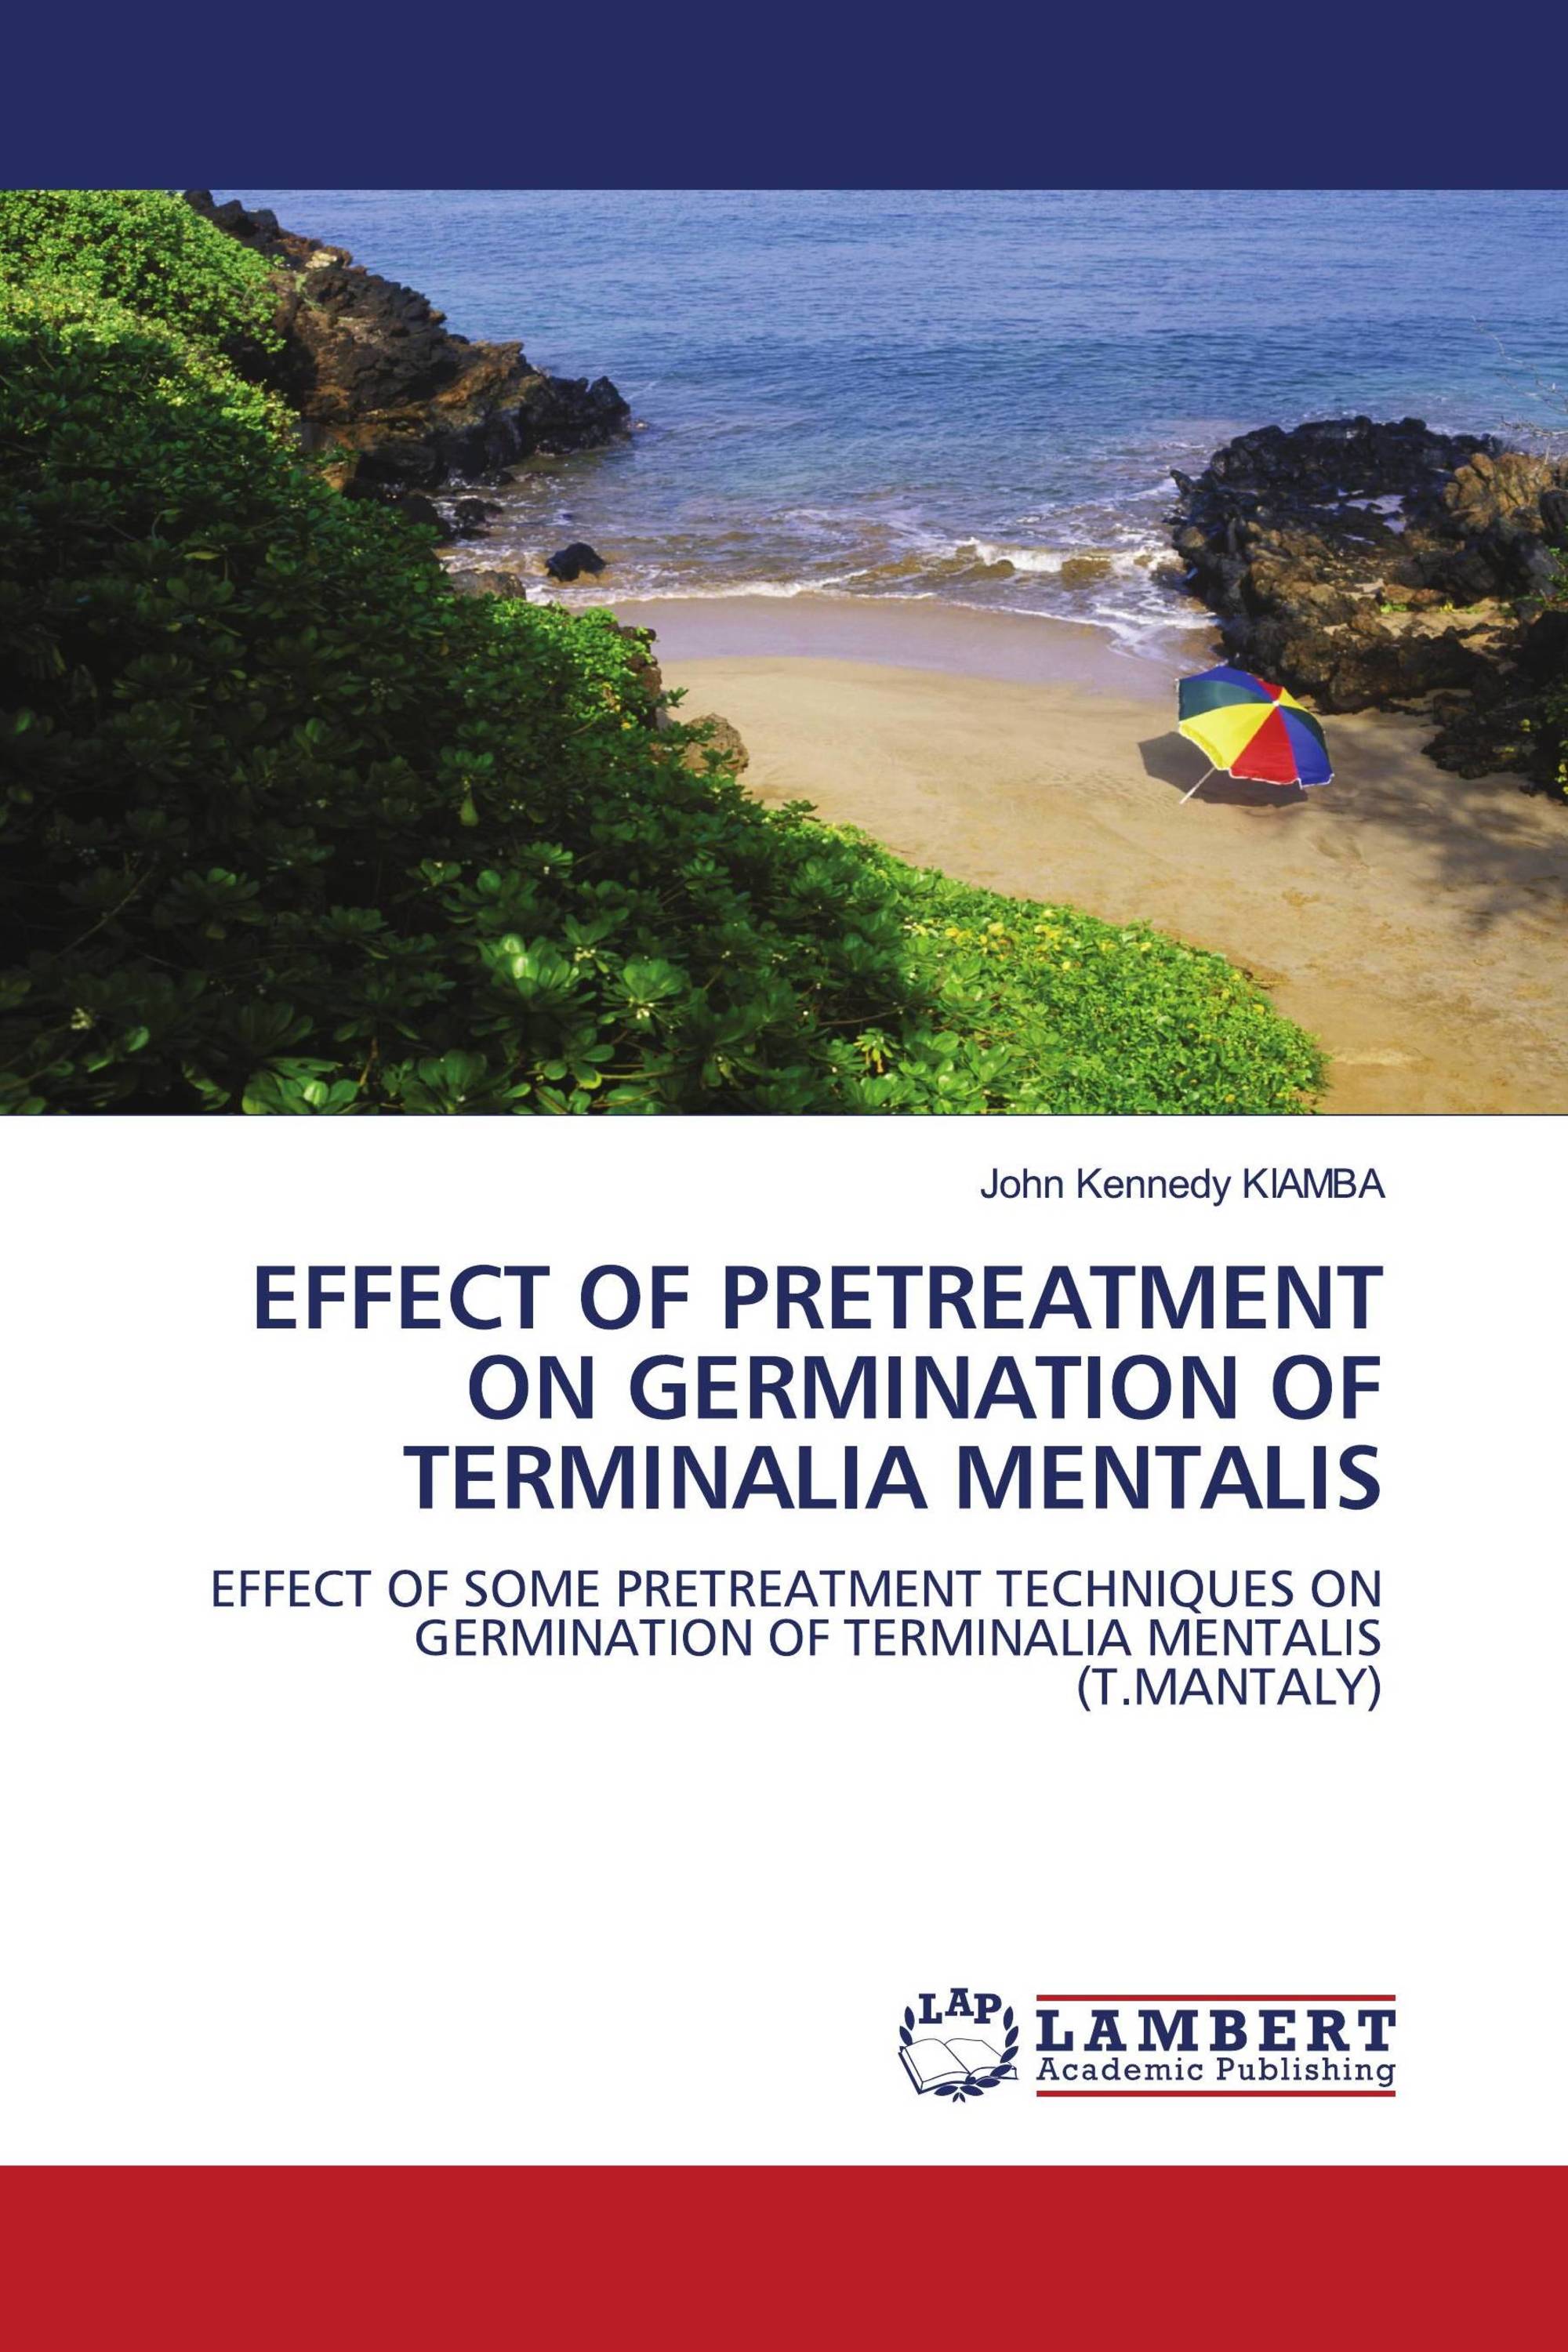 EFFECT OF PRETREATMENT ON GERMINATION OF TERMINALIA MENTALIS